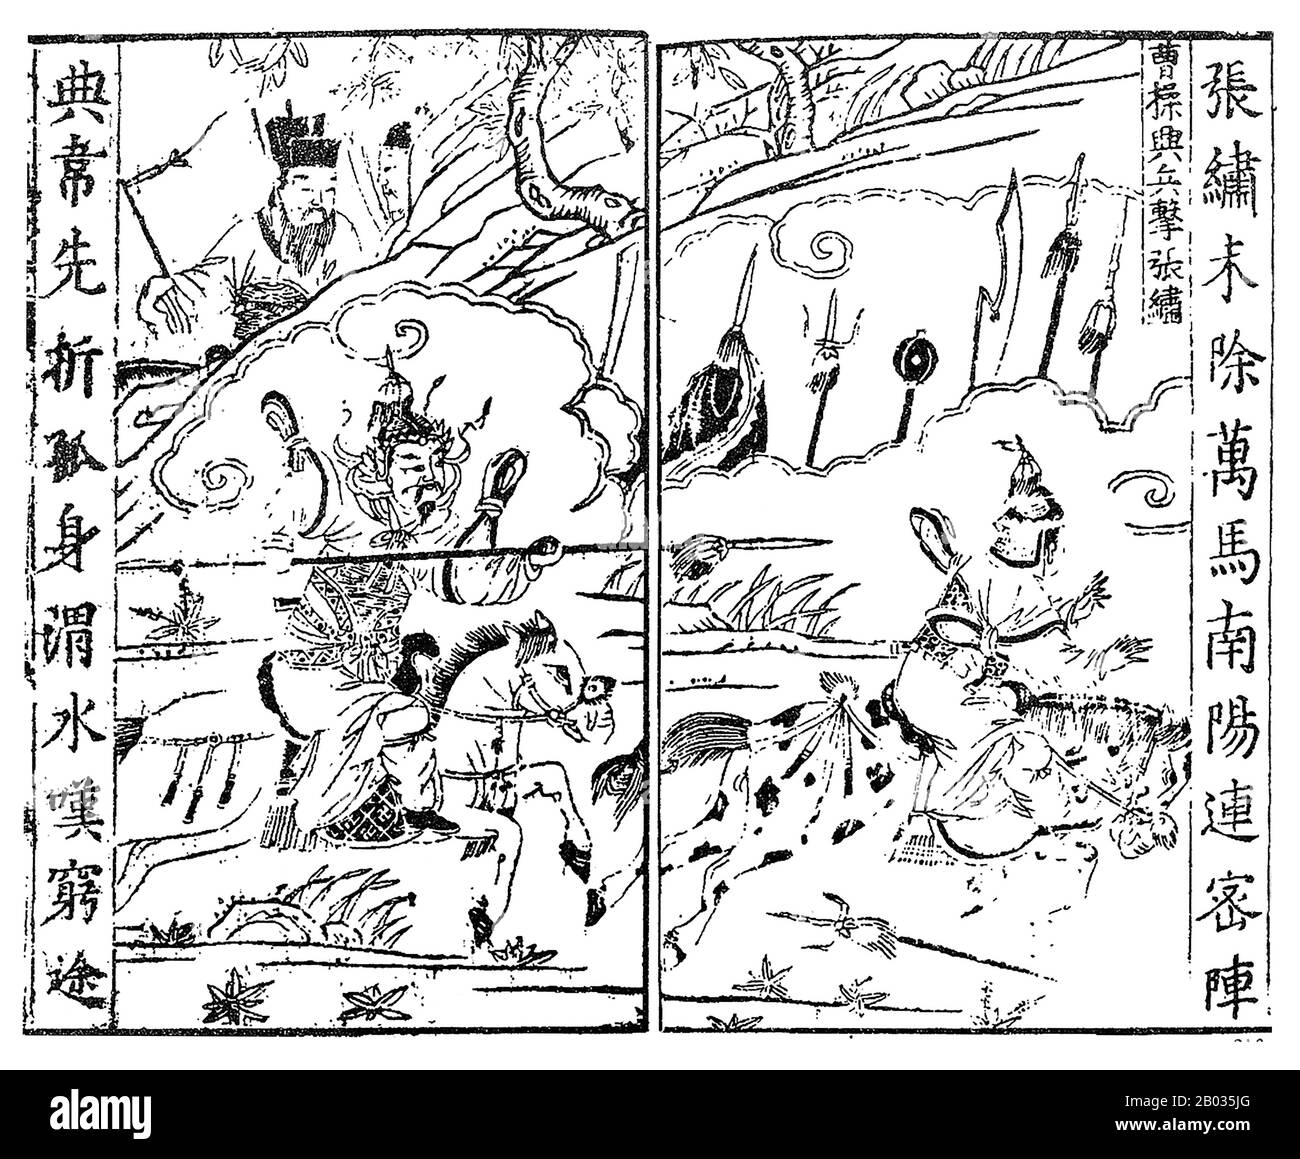 CaO Cao (155-15 marzo 220), nome di cortesia Mengde, è stato uno dei più grandi signori della guerra durante il periodo dei regni degli alberi. Il penultimo cancelliere della dinastia Han orientale, Cao è salito al grande potere negli ultimi anni della dinastia. Quando cadde la dinastia degli Han Orientali, Cao Cao riuscì a garantire le città più grandi e prospere delle pianure centrali della Cina settentrionale, unendole sotto il suo dominio. Durante Il Periodo Dei Tre Regni, pose le basi per quello che sarebbe diventato lo stato di Cao Wei, onorato postumo con il titolo di 'Imperatore Wu di Wei'. Anche se era stato molto su Foto Stock